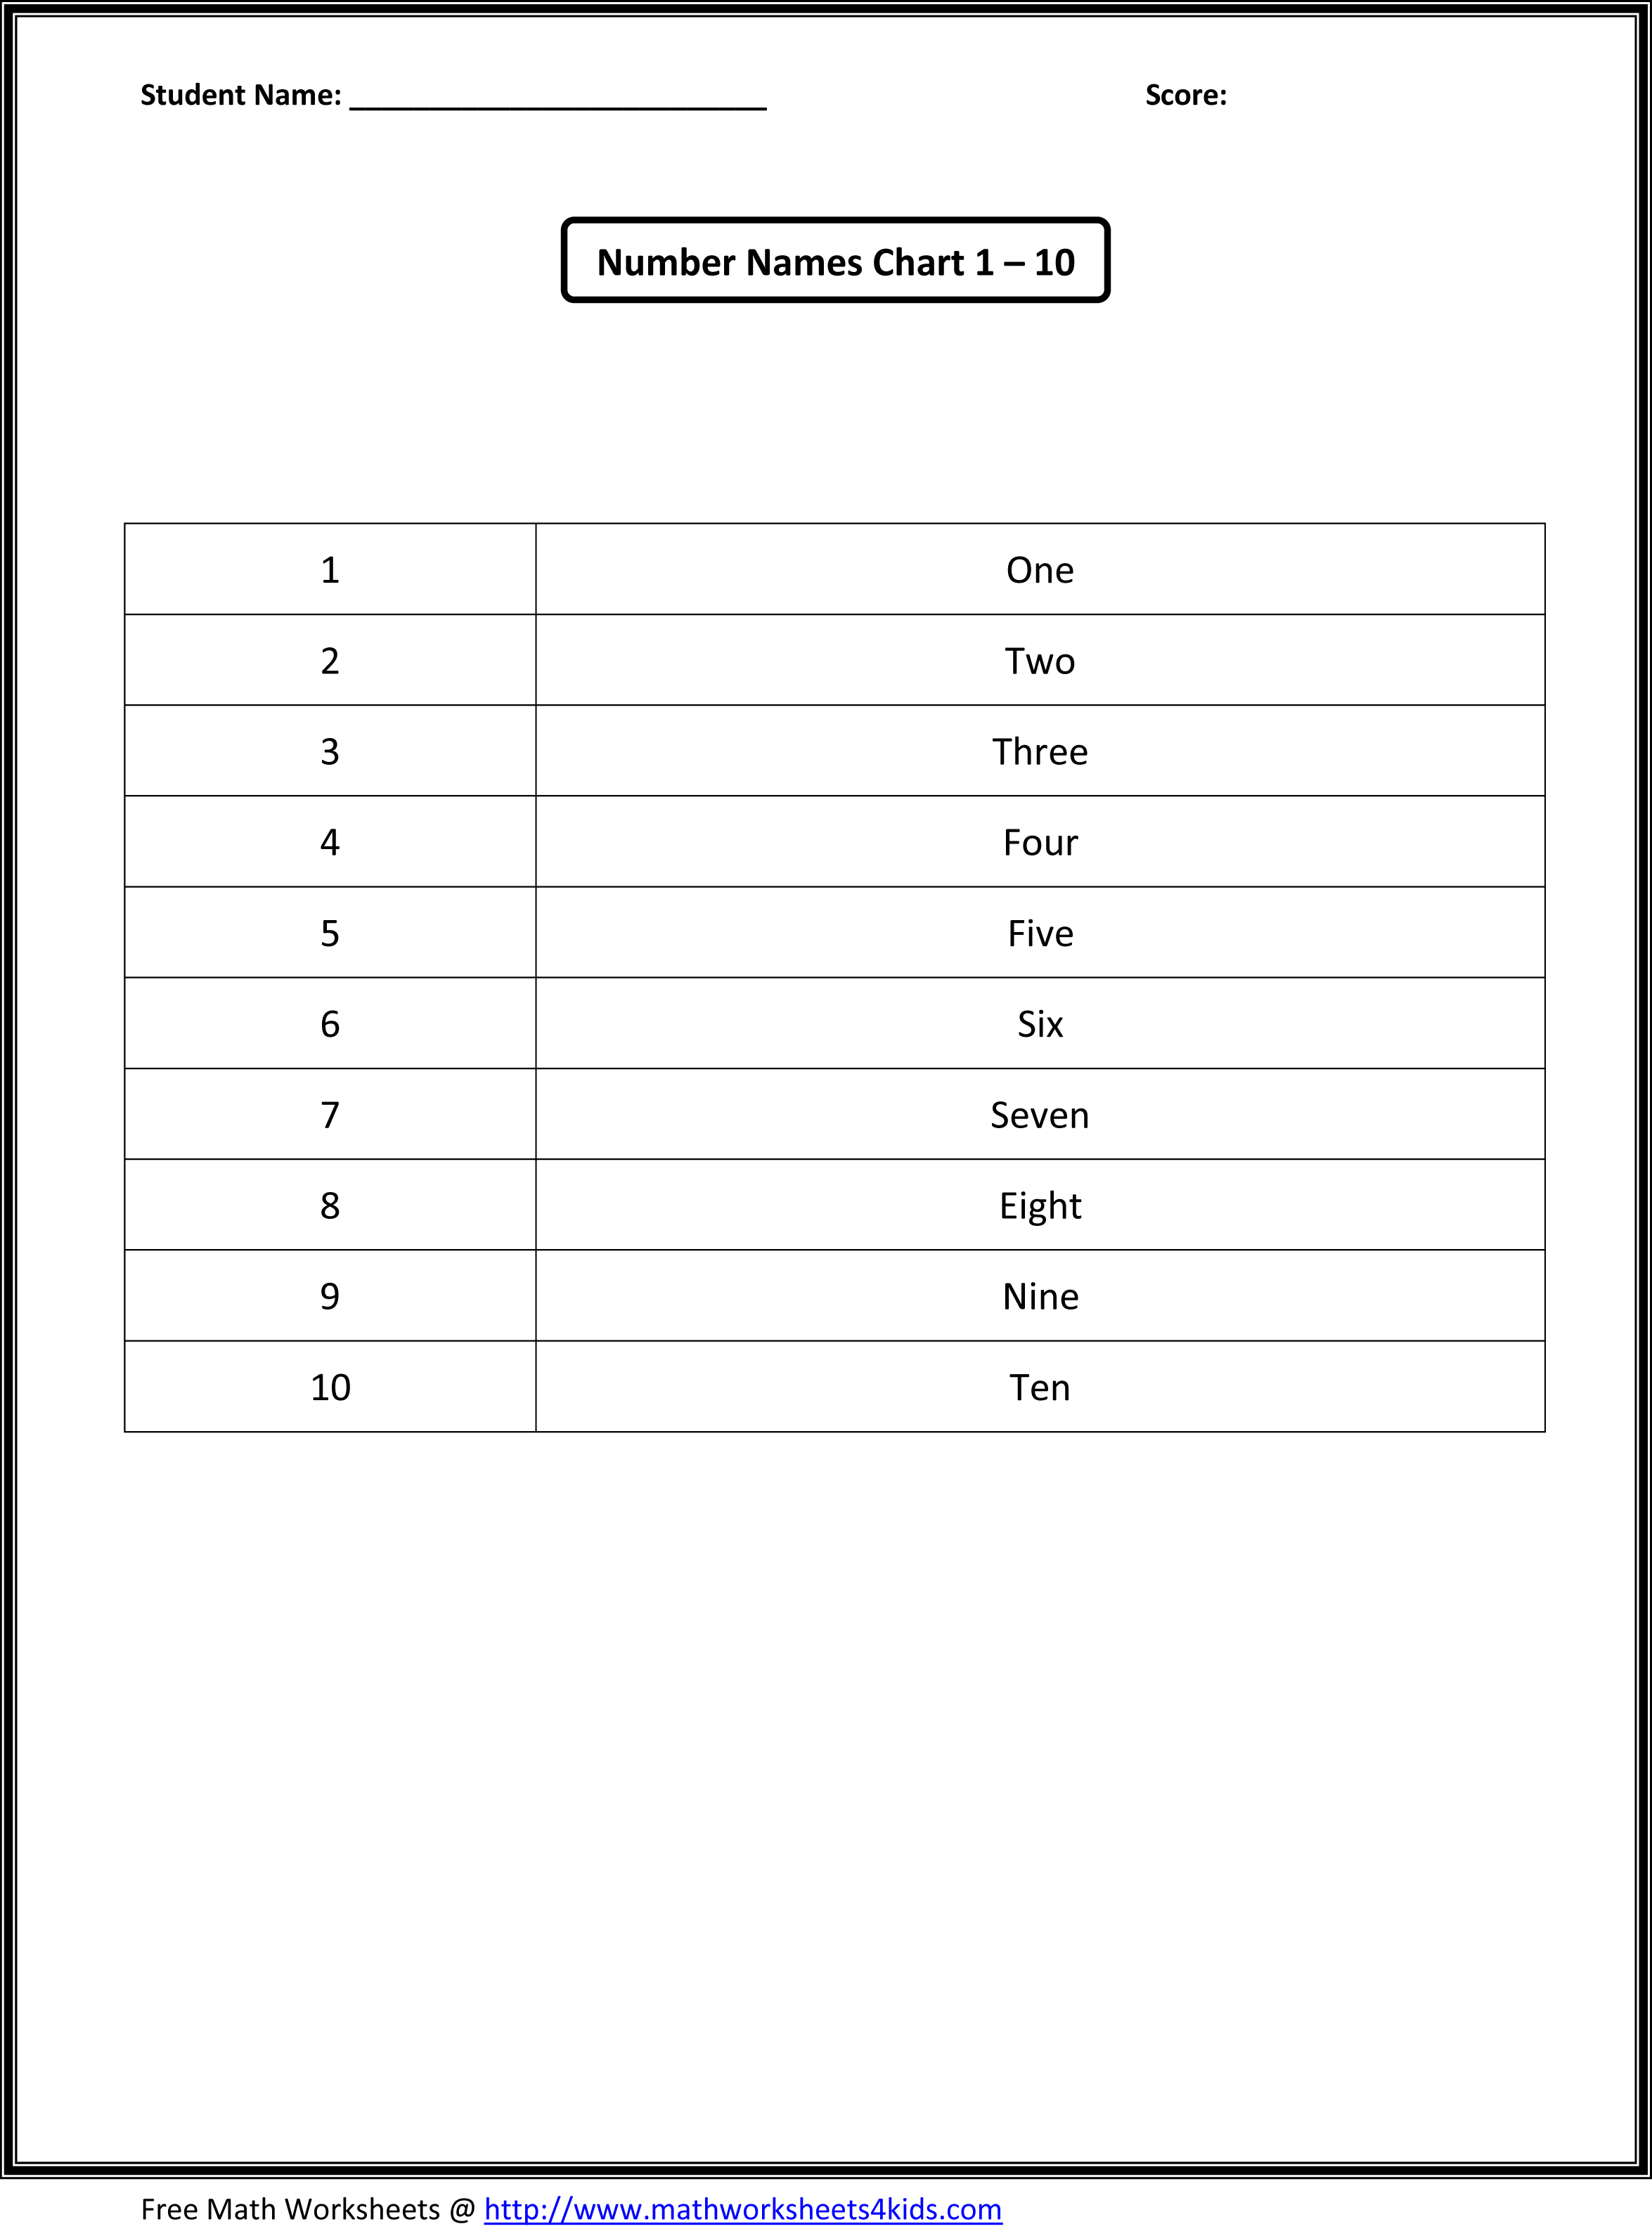 15 Best Images Of Blank Kindergarten Number Worksheets 1 20 Blank Number Chart 1 20 Printable